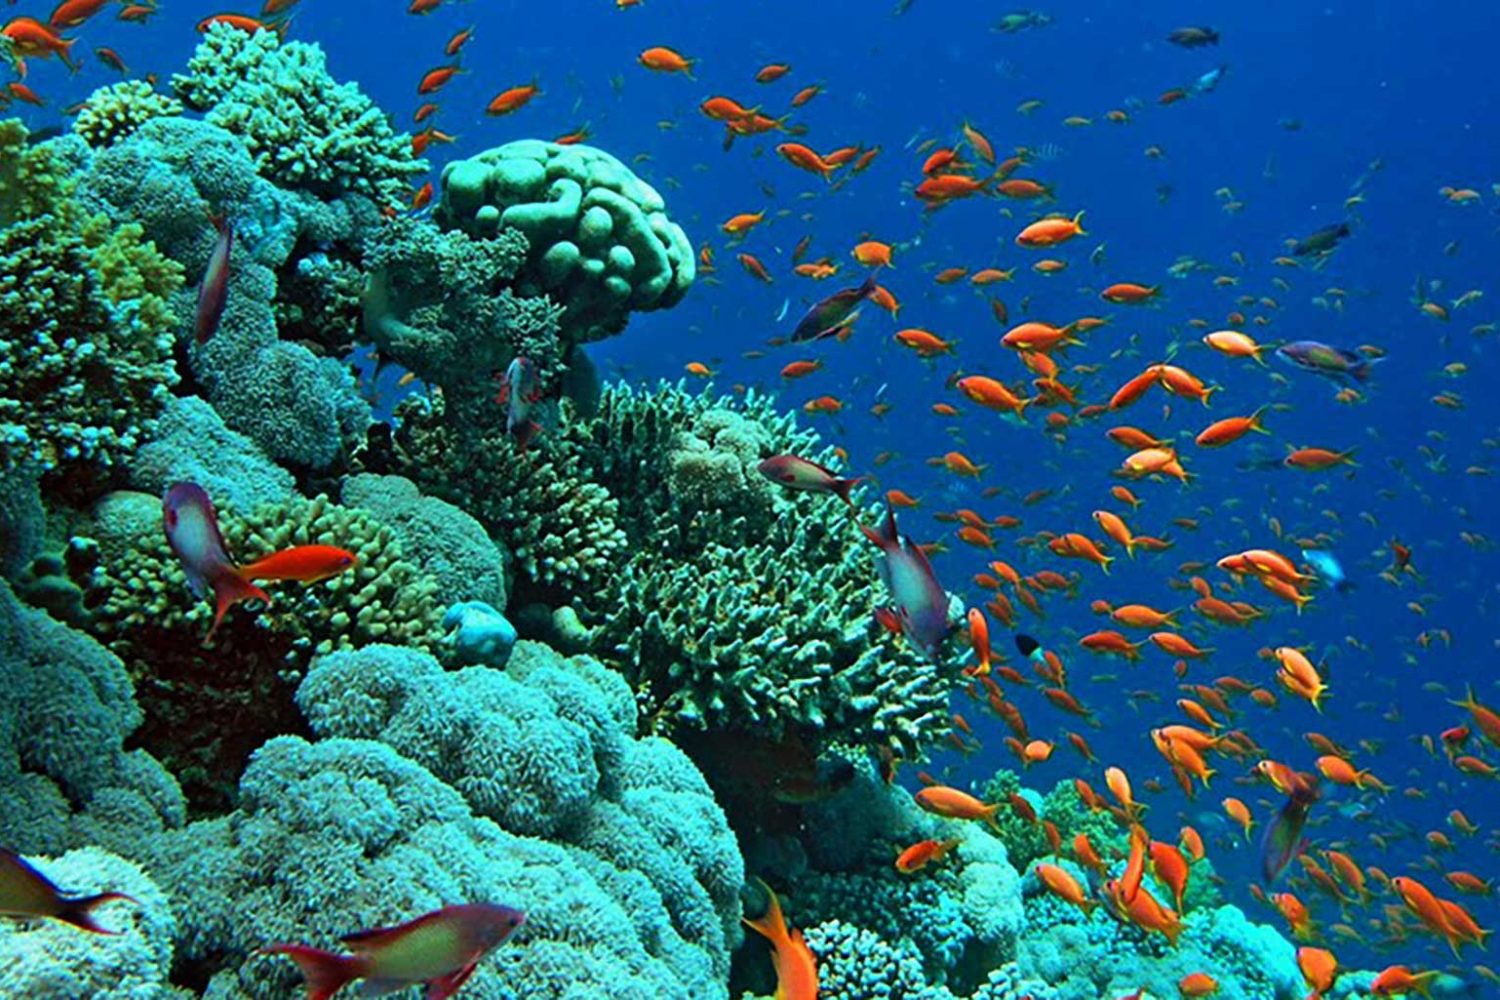 Лучший коралловый риф. Коралловый риф Египет Хургада. Коралловый риф в Шарм Эль Шейхе. Подводный риф Шарм-Эль-Шейх. Подводный мир Египта Шарм-Эль-Шейх.